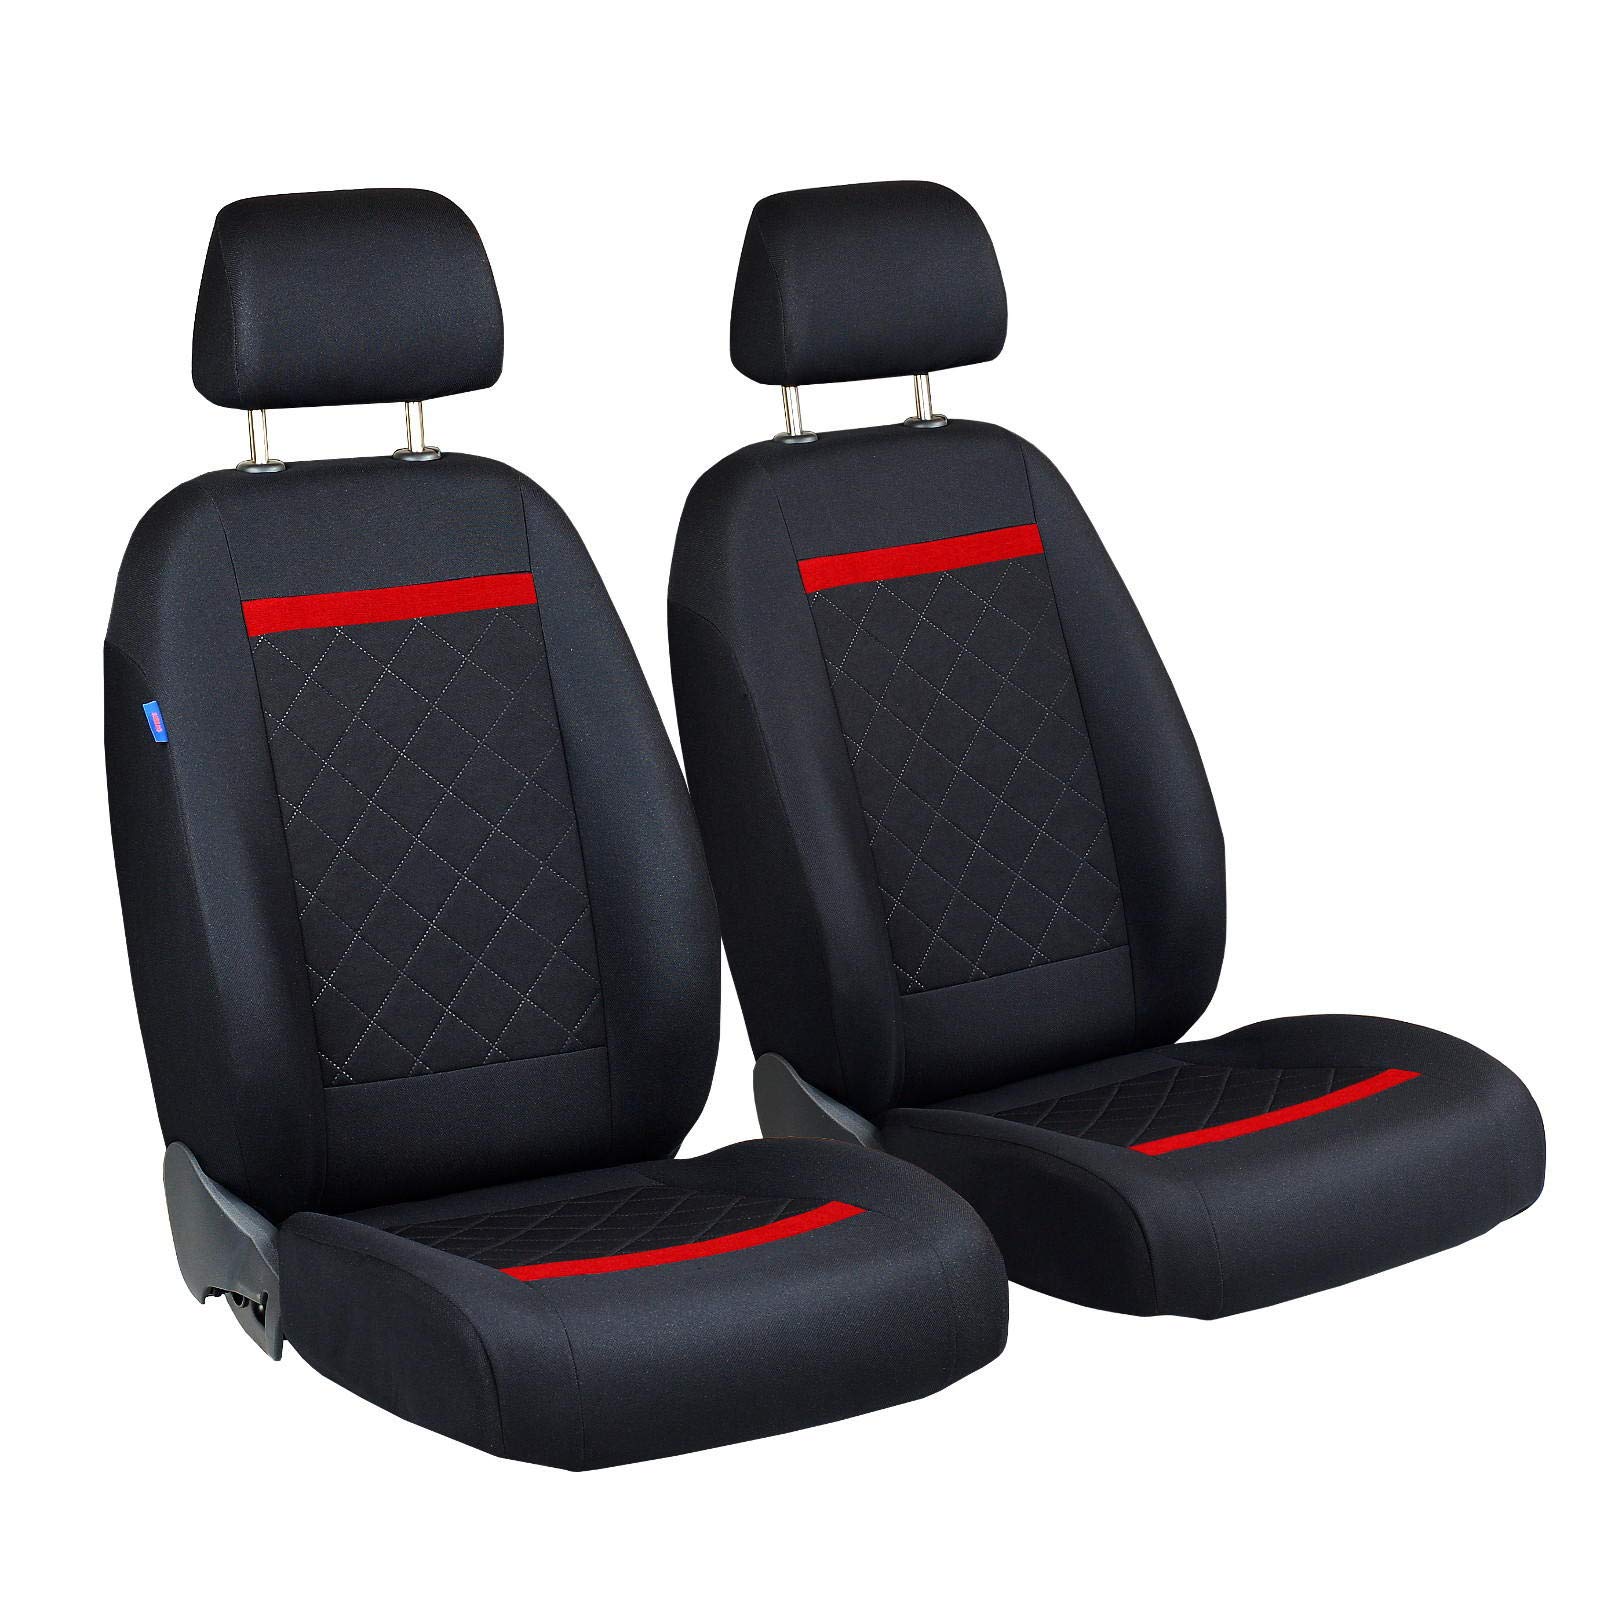 Zakschneider Sitzbezüge für CRX - Vorne Sitzbezüge - für Fahrer und Beifahrer - Farbe Premium Schwarz Gepresstes Karomuster mit Roten Strich von Zakschneider